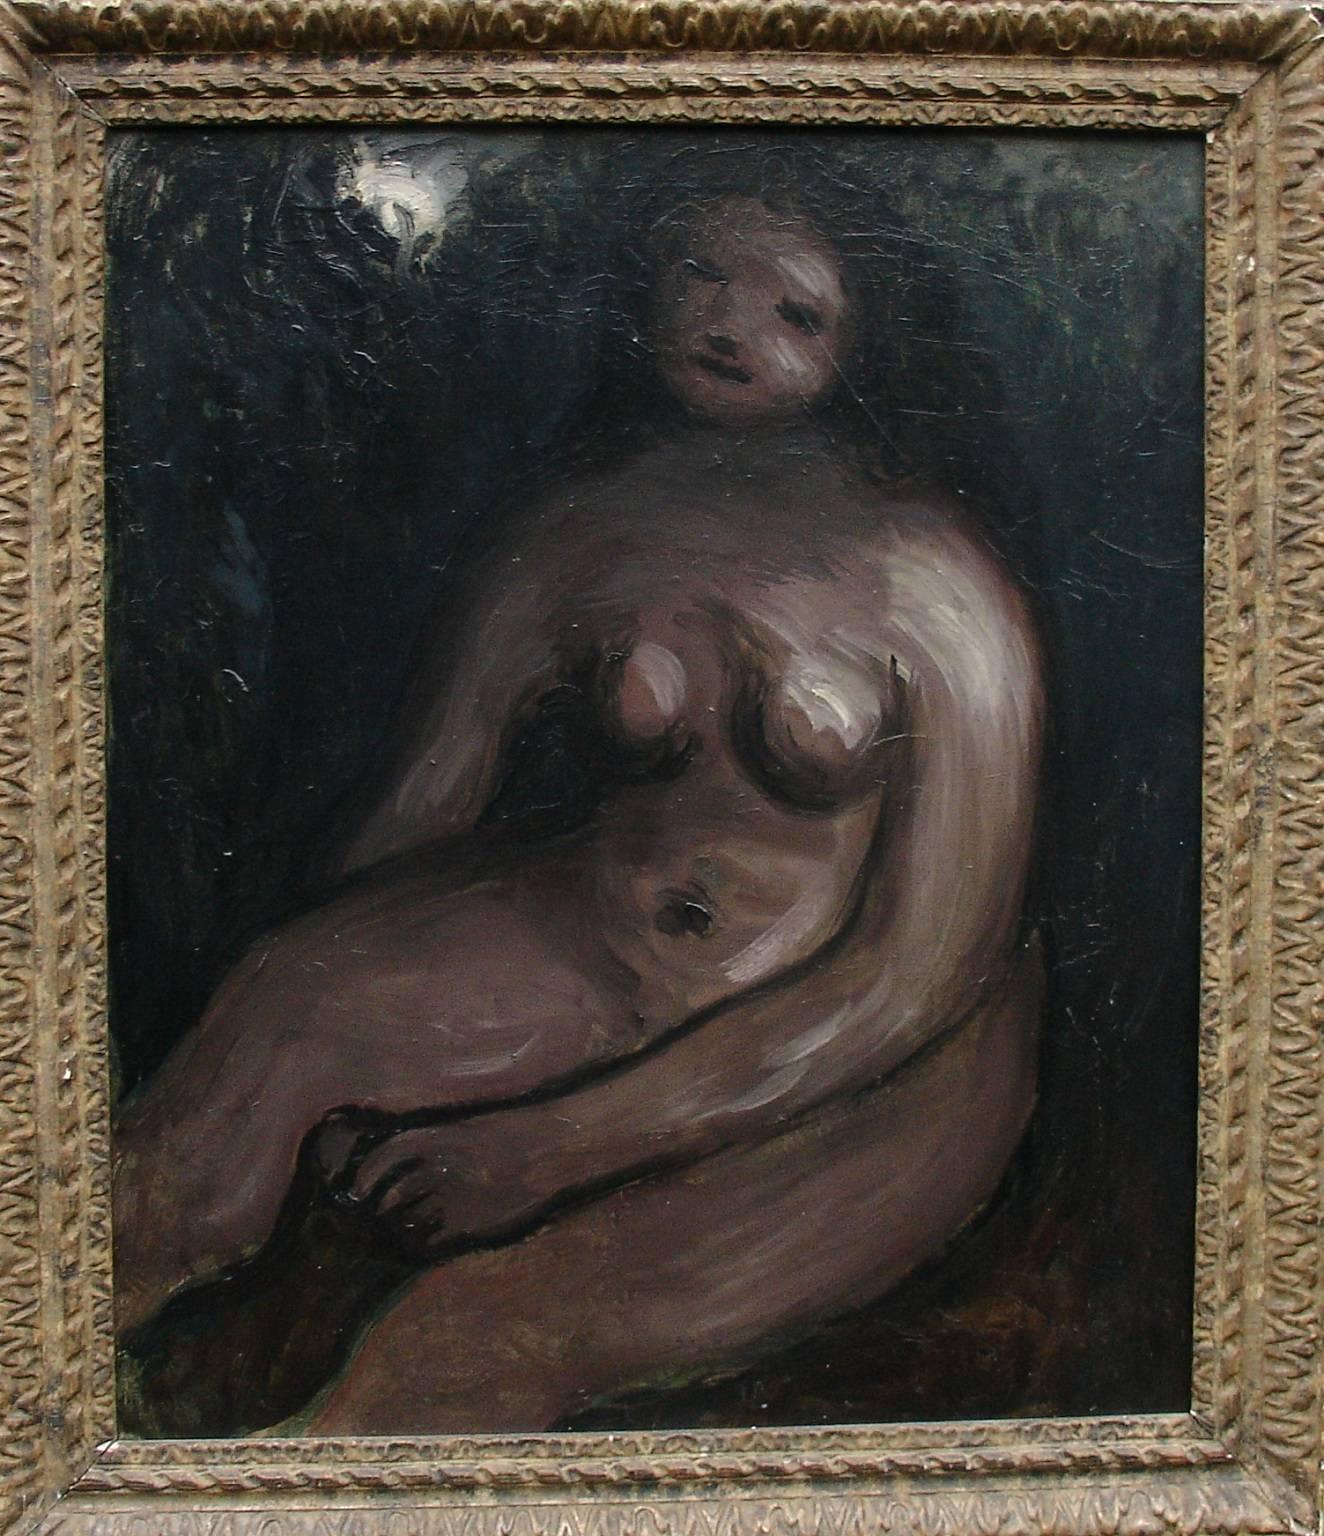 Nude - Painting by Bernard Meninsky